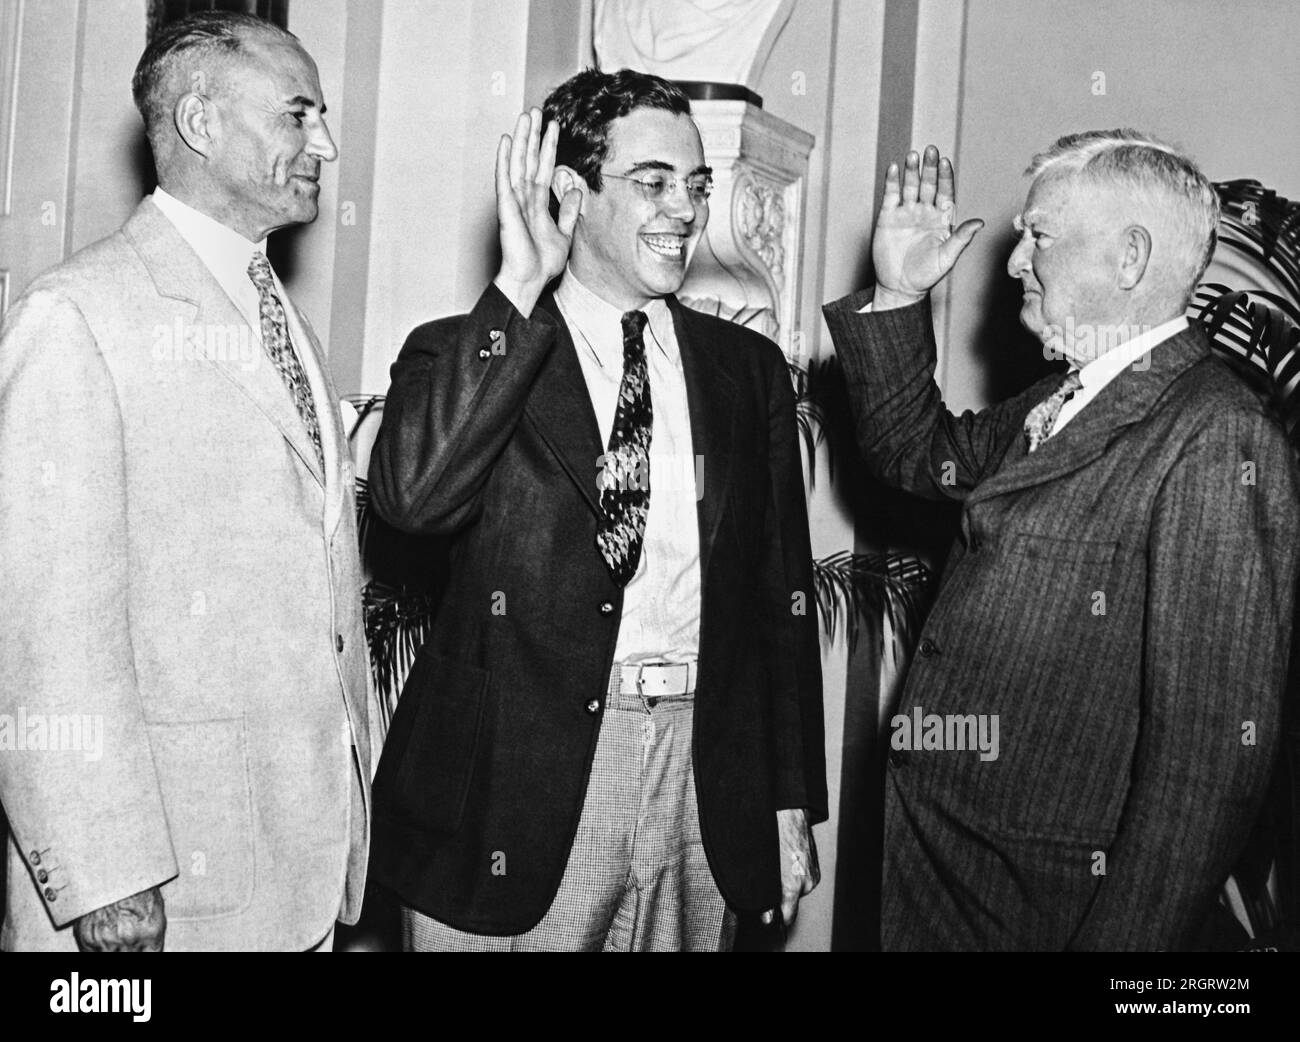 Washington, D.C.: 21. Juni 1935 Vizepräsident John Garner schwört, dass Rush holt seinen Sitz im Senat einnimmt. Obwohl holt letzten November in West Virginia gewählt wurde, musste er bis Juni 19. warten, als er das erforderliche Alter von 30 Jahren wechselte, um seinen Sitz im Senat einnehmen zu können. Senatorin M. Neeley aus West Virginia steht auf der linken Seite bereit. Stockfoto